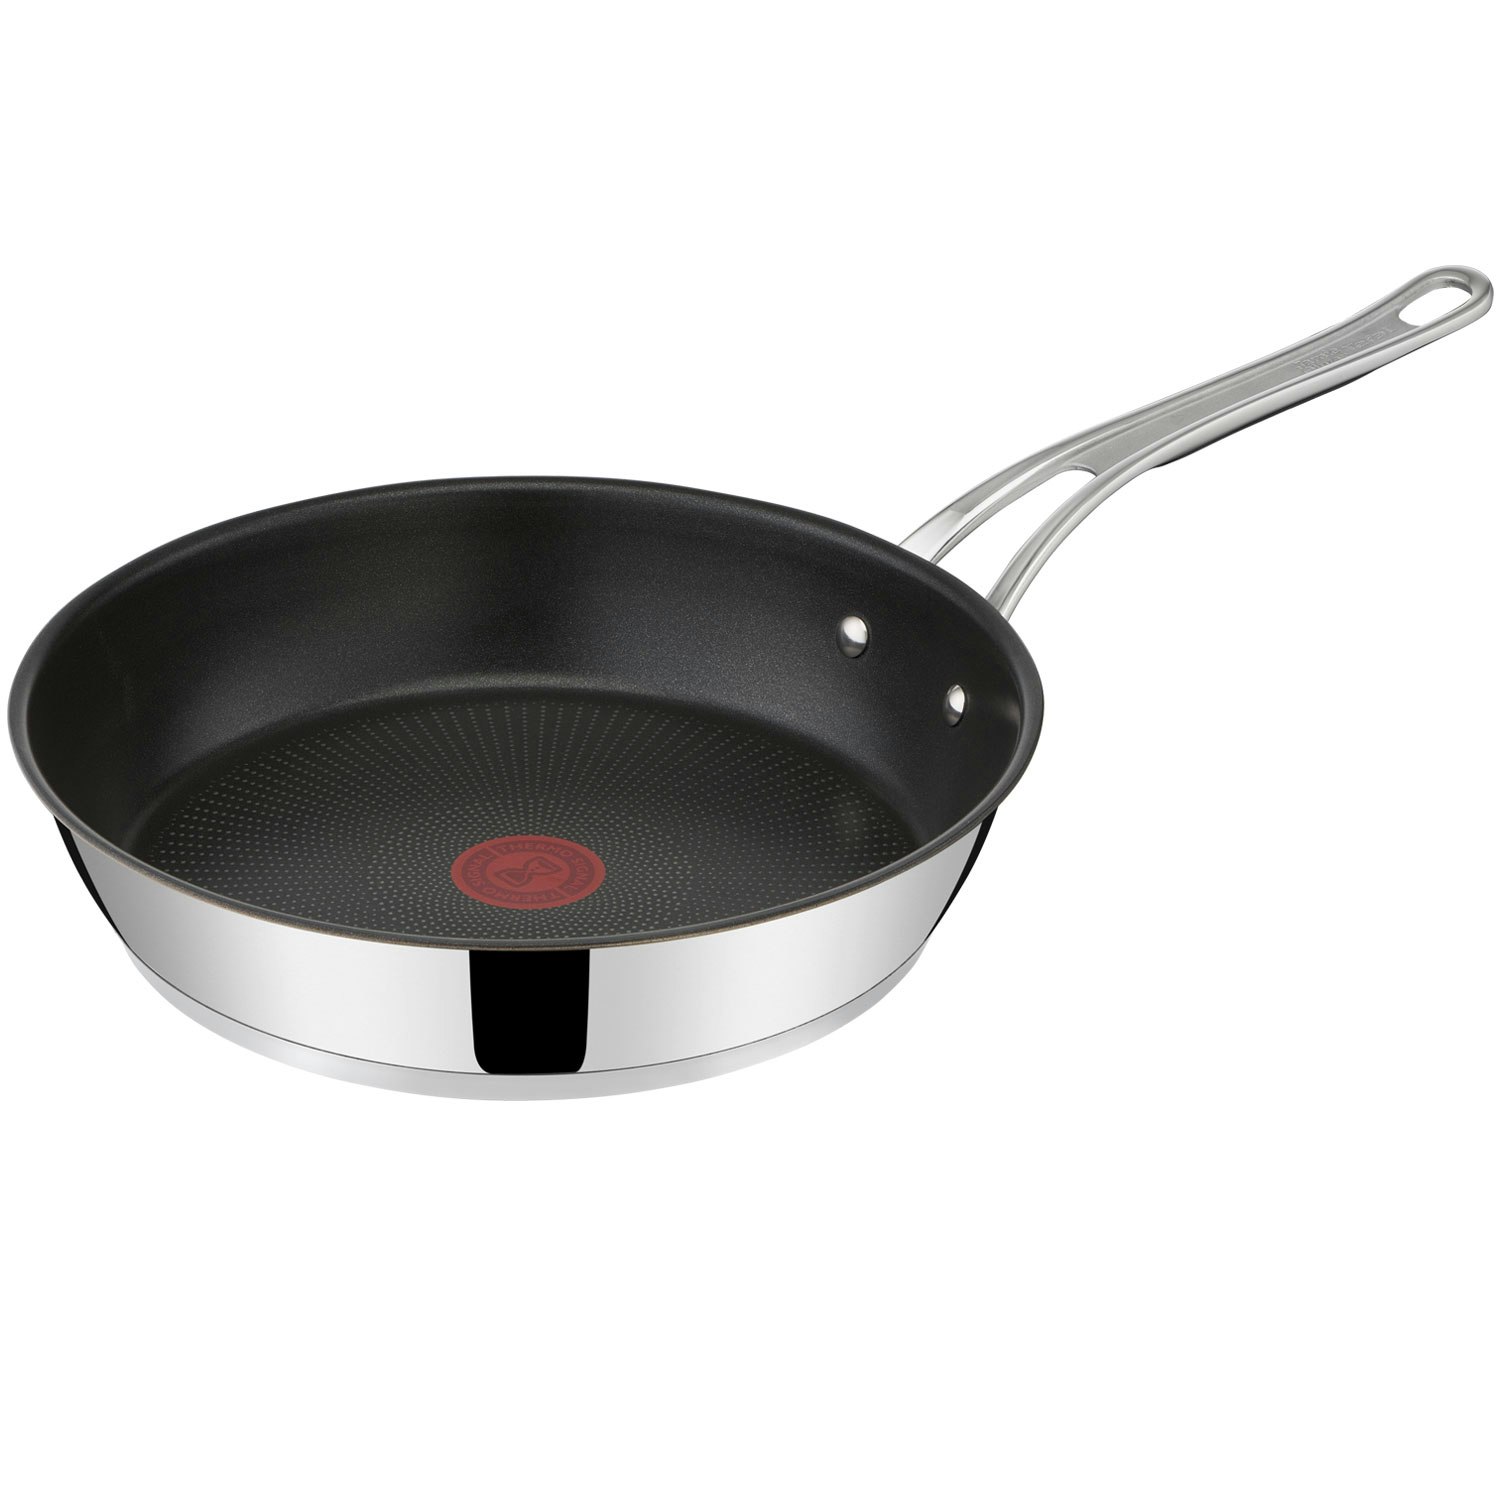 Vertrappen desinfecteren gek geworden Jamie Oliver Cook's Classic Frying Pan, 20 cm - Tefal @ RoyalDesign